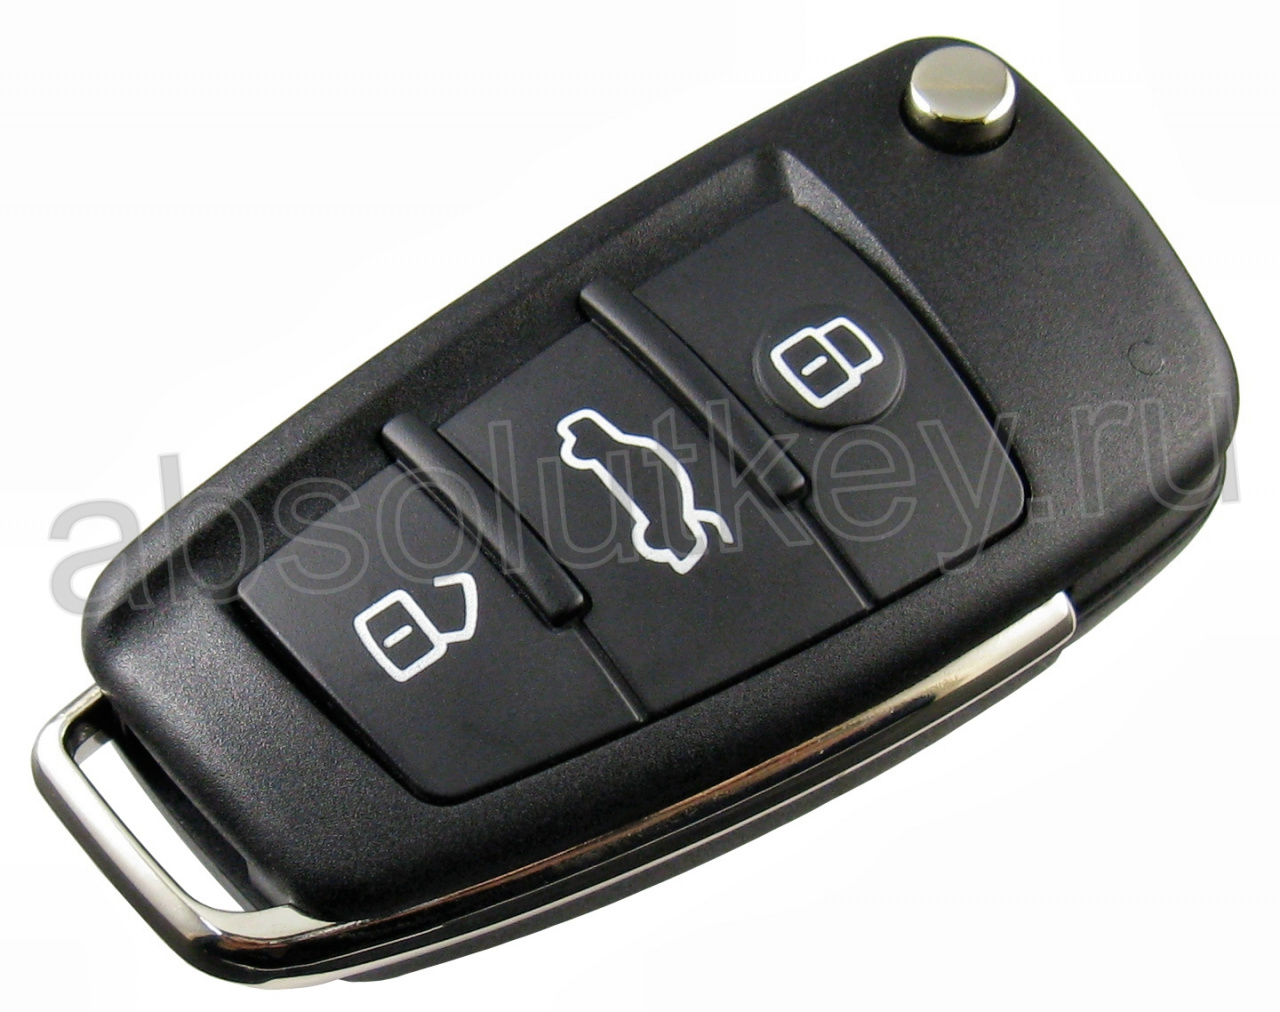 Ключ для AUDI A6L, Q7, 433 Мгц.